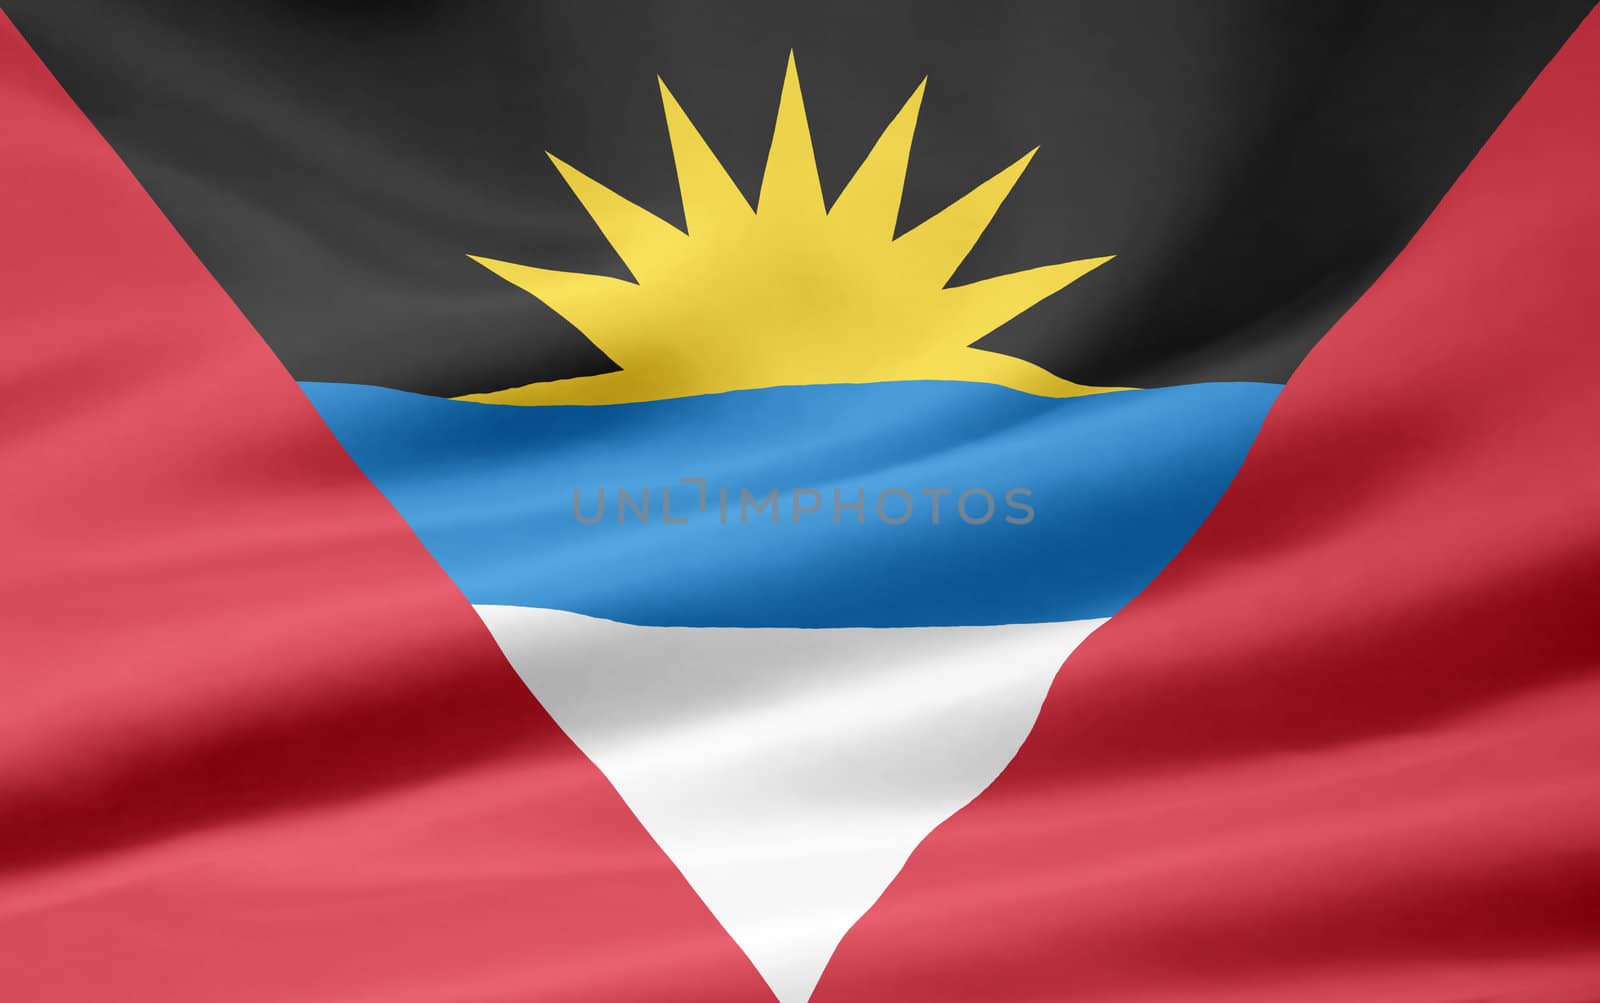 High resolution flag of Antigua and Barbuda